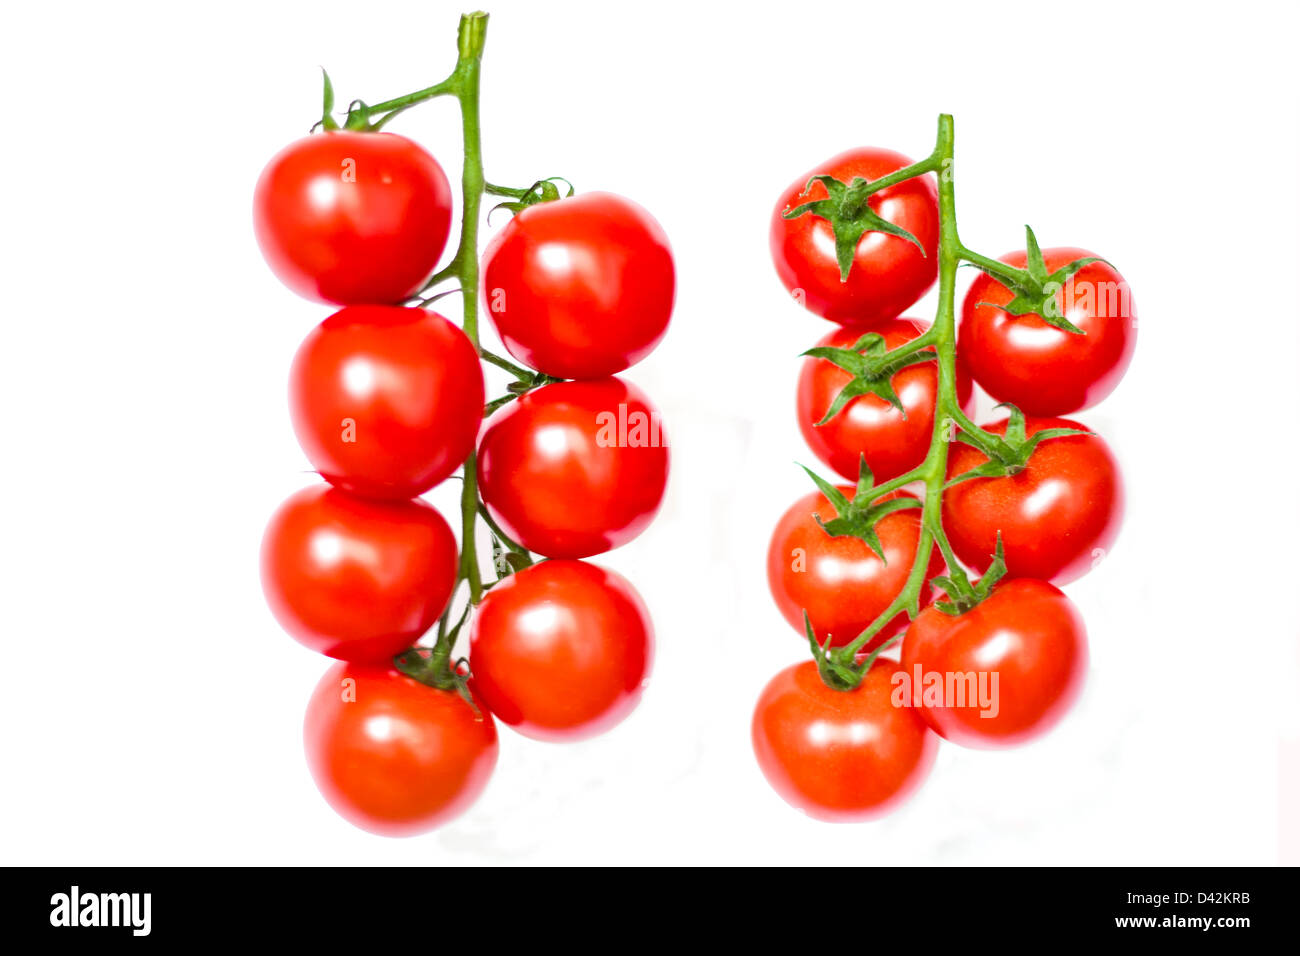 Zwei Tomaten Reben isoliert auf weiß - Vorder- und Rückseite Ansichten Stockfoto